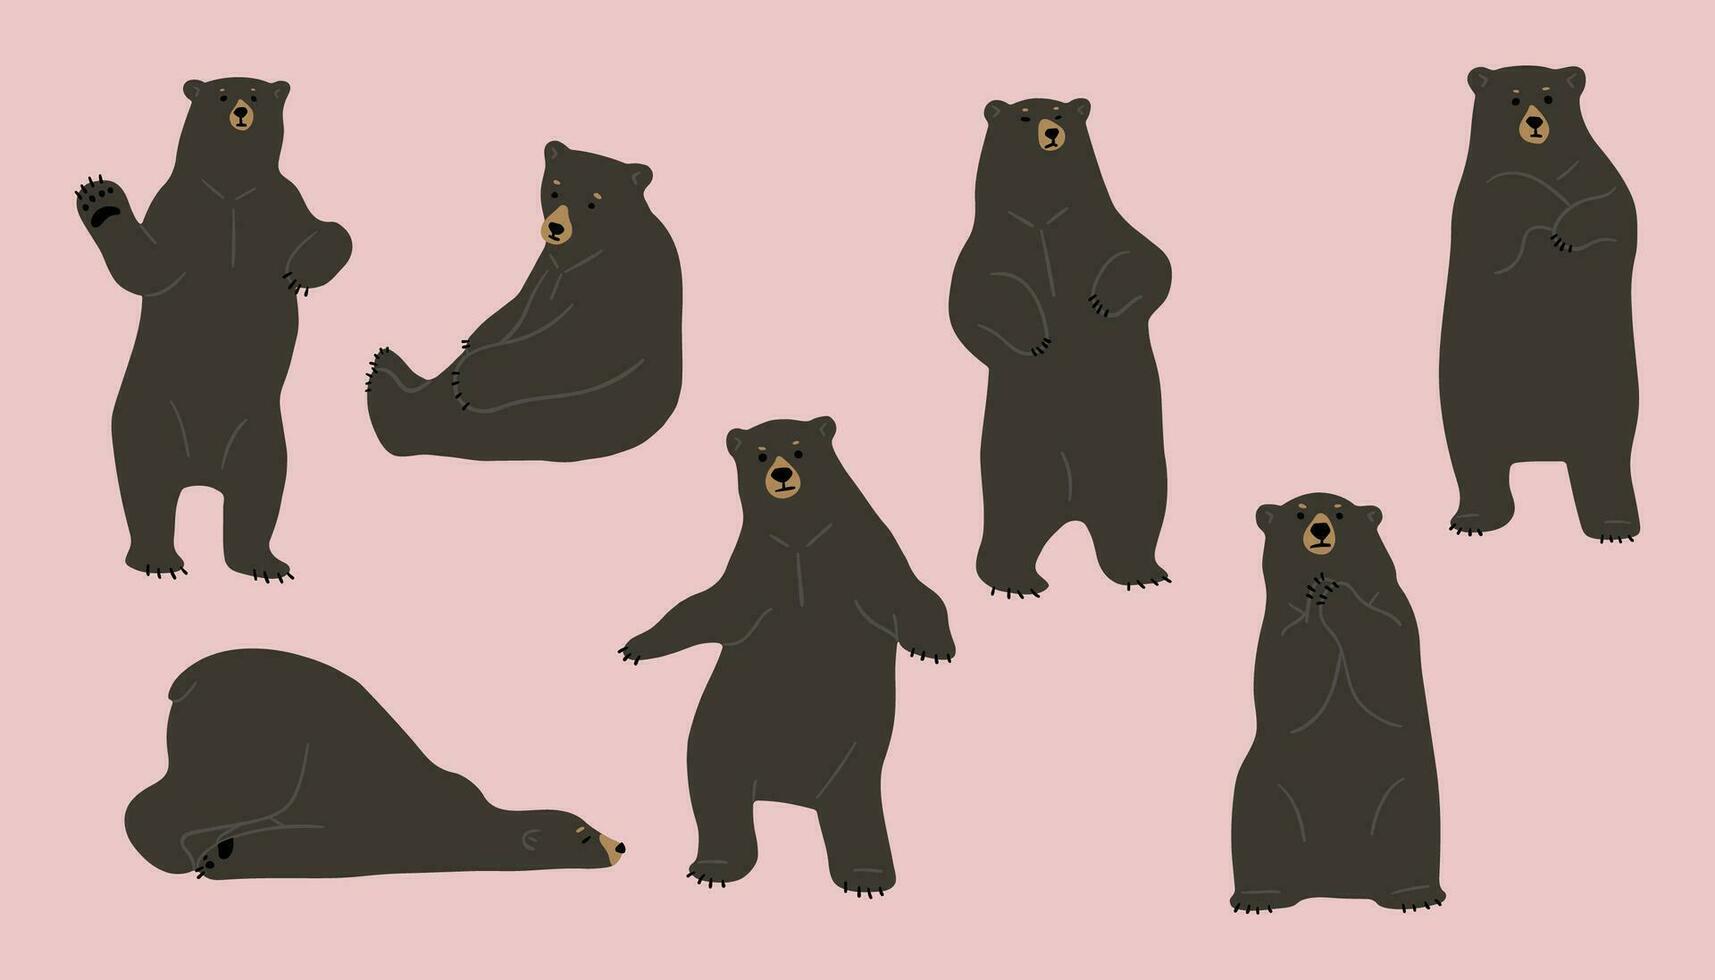 American black bear illustration Vector